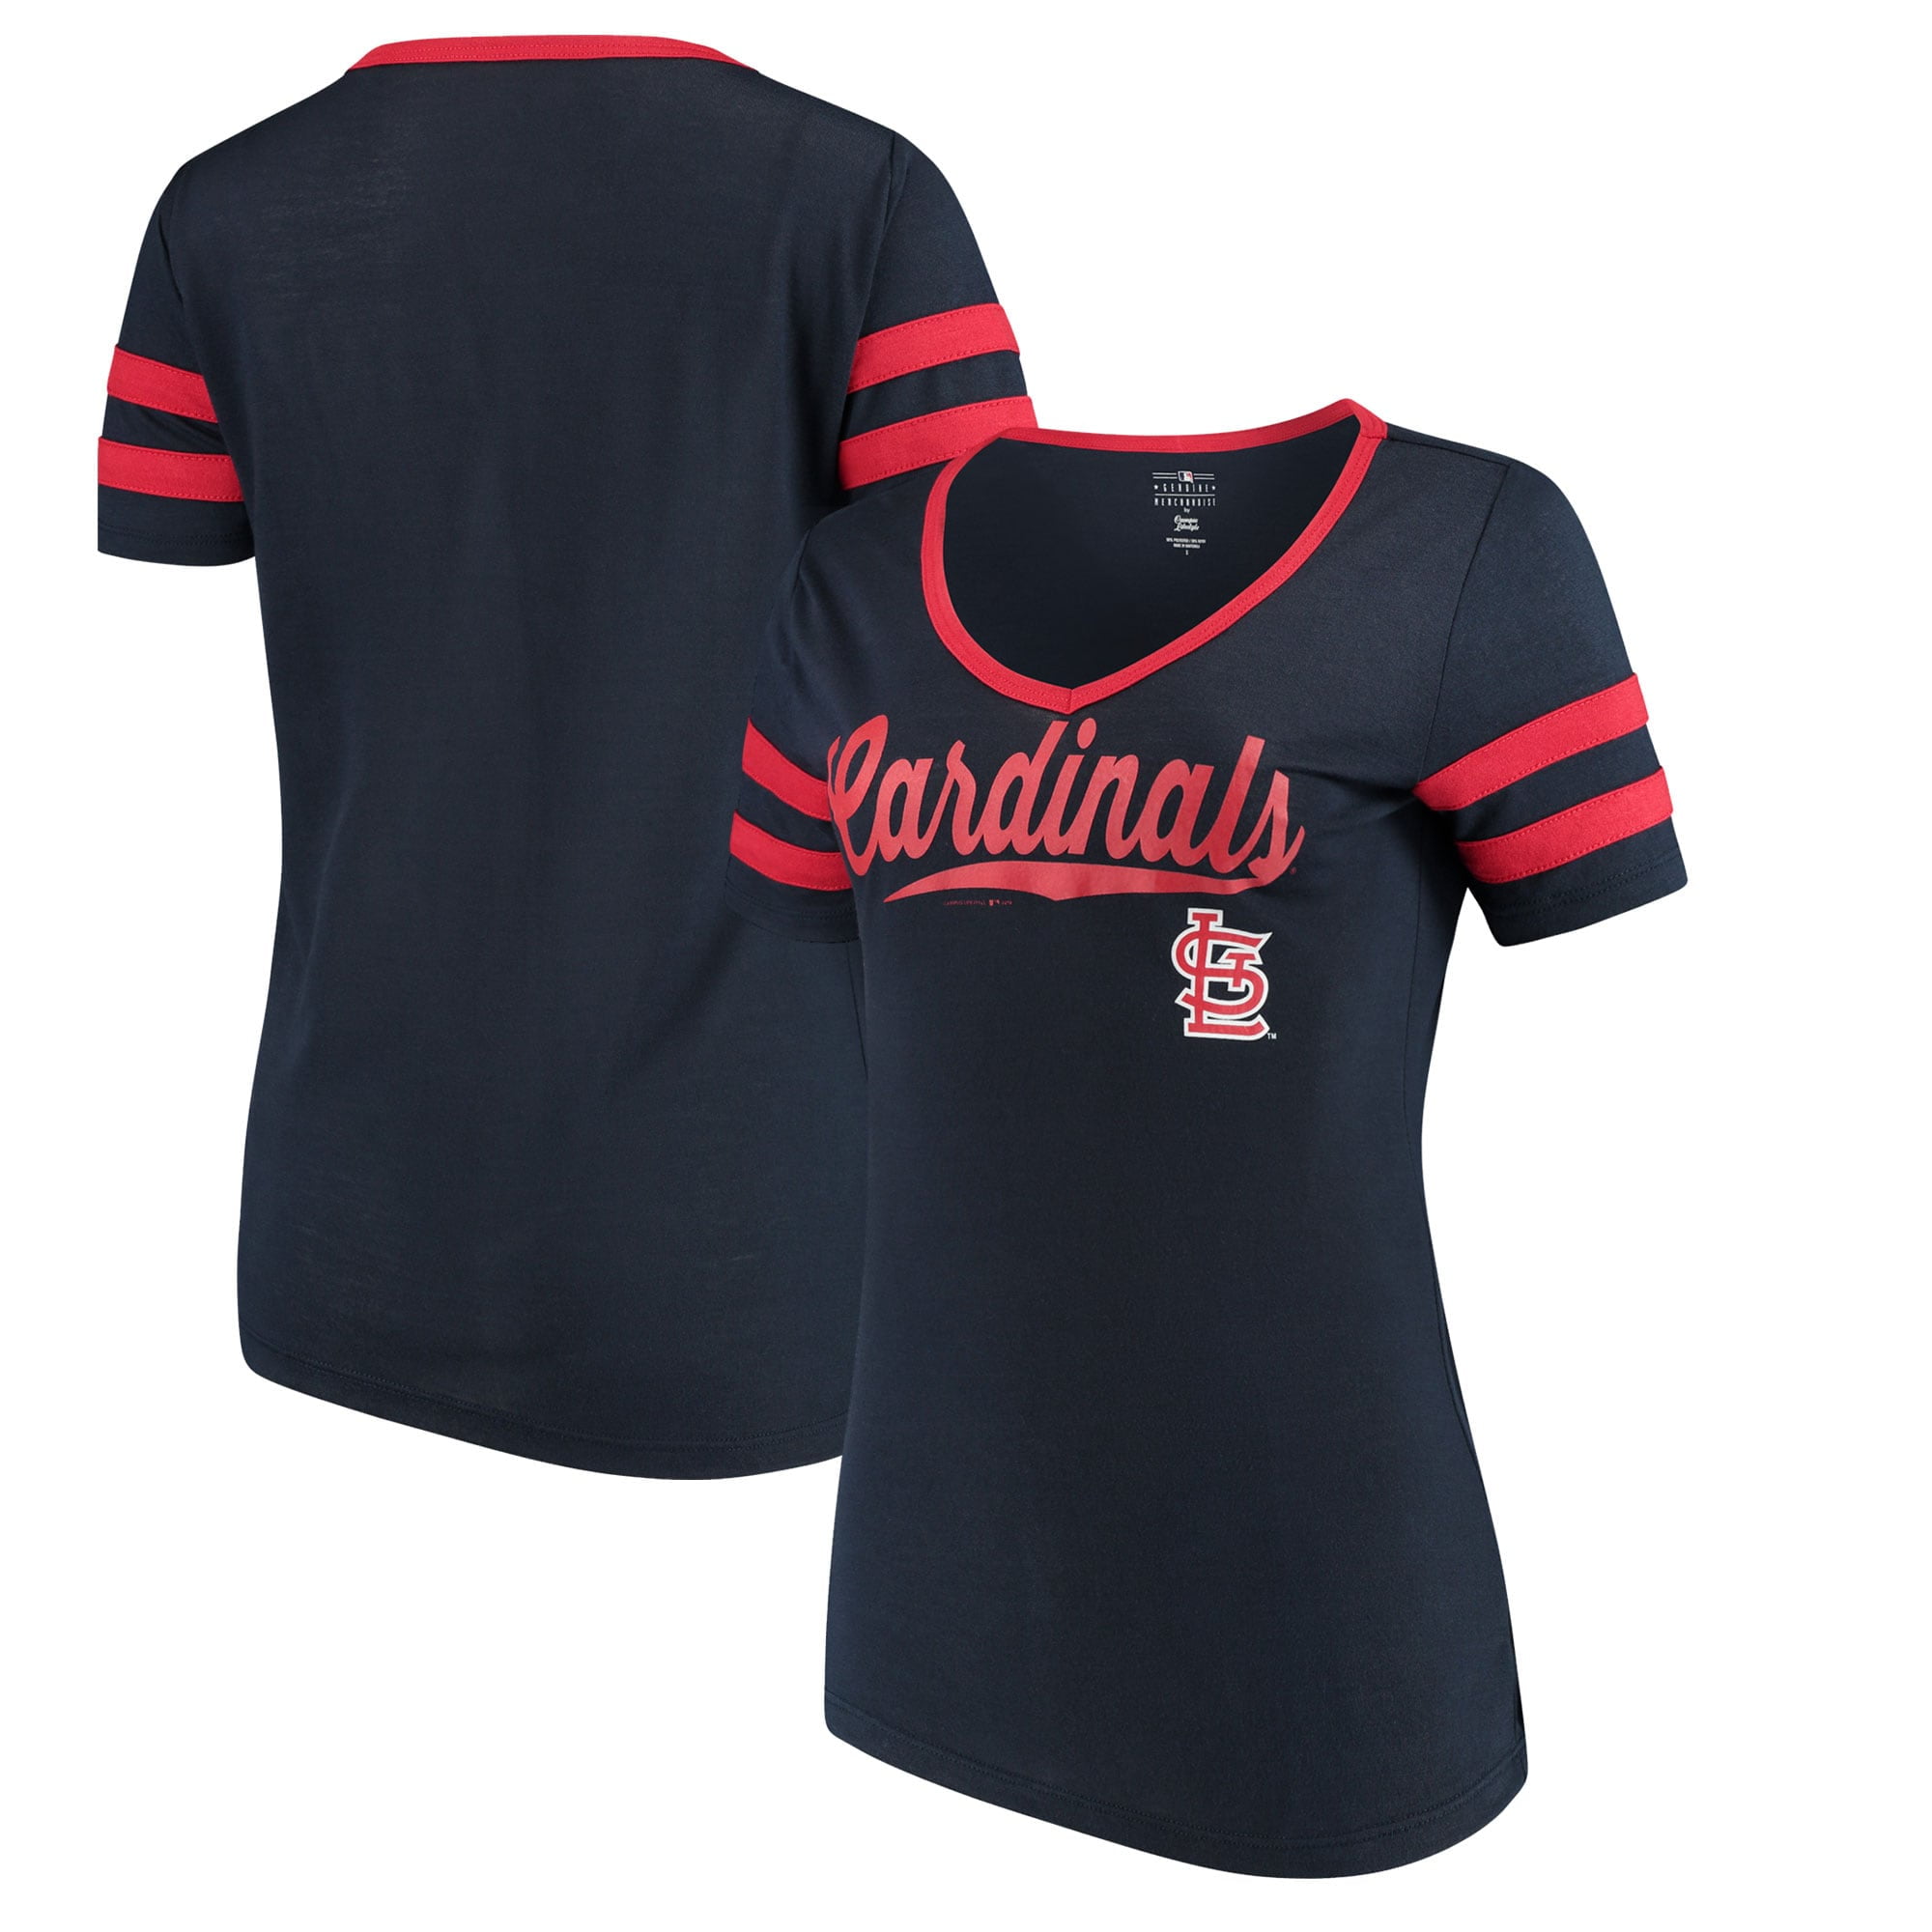 cardinals jersey shirt